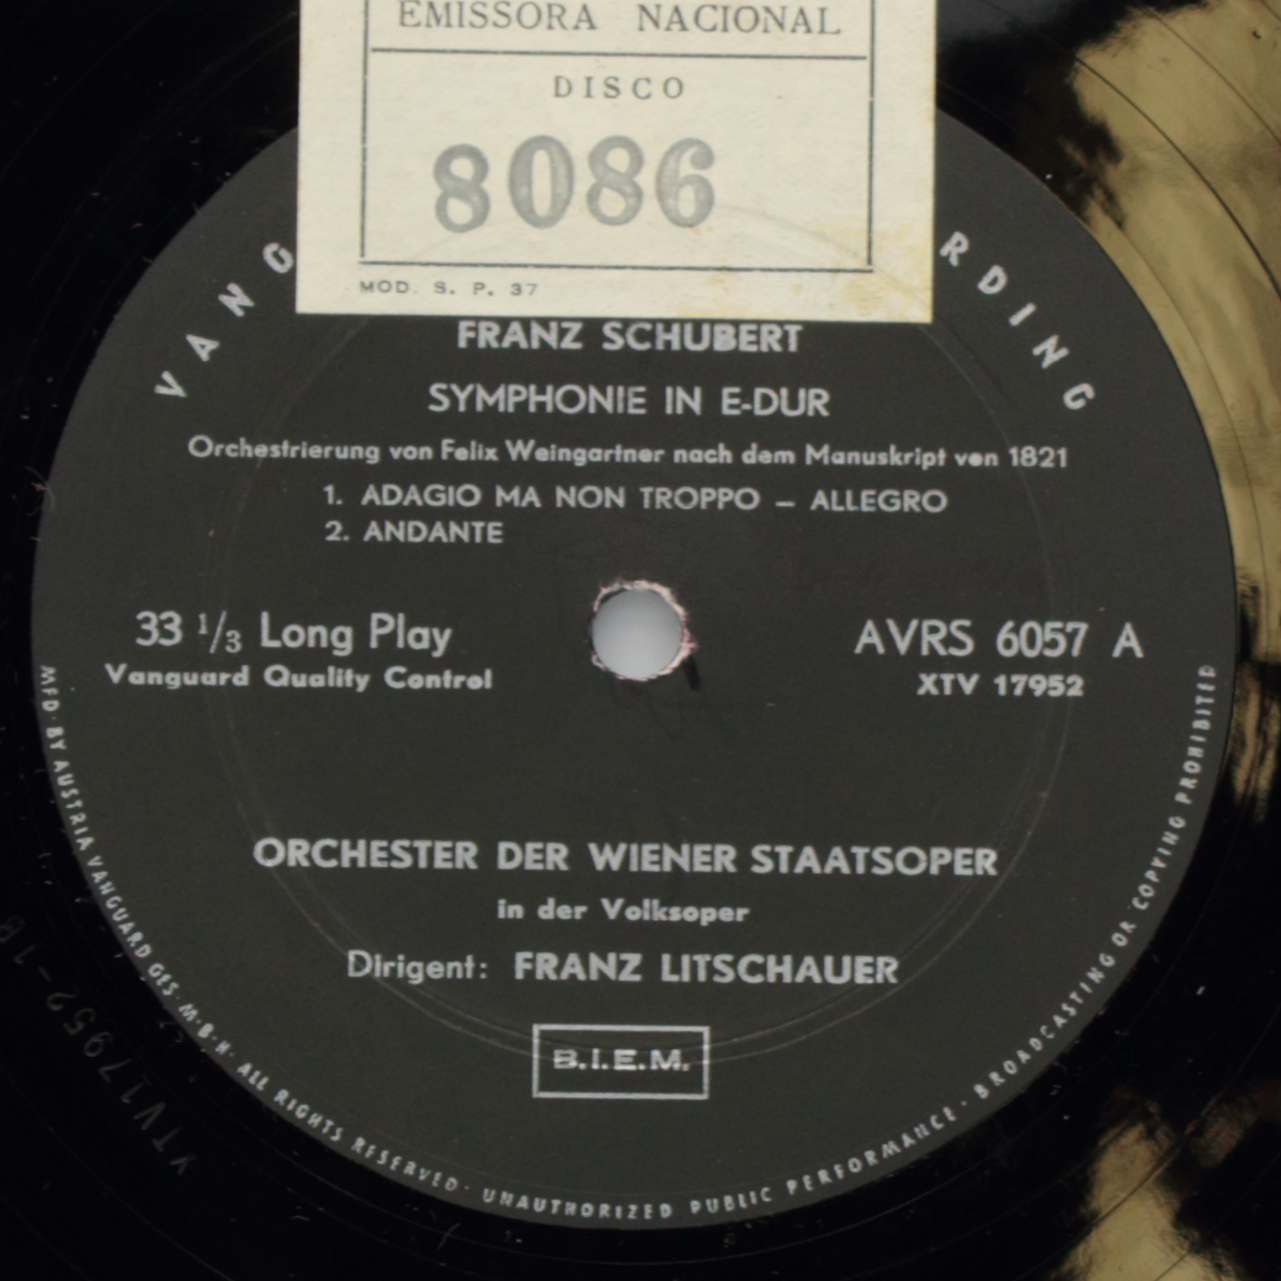 Schubert: Symphonie in E-dur